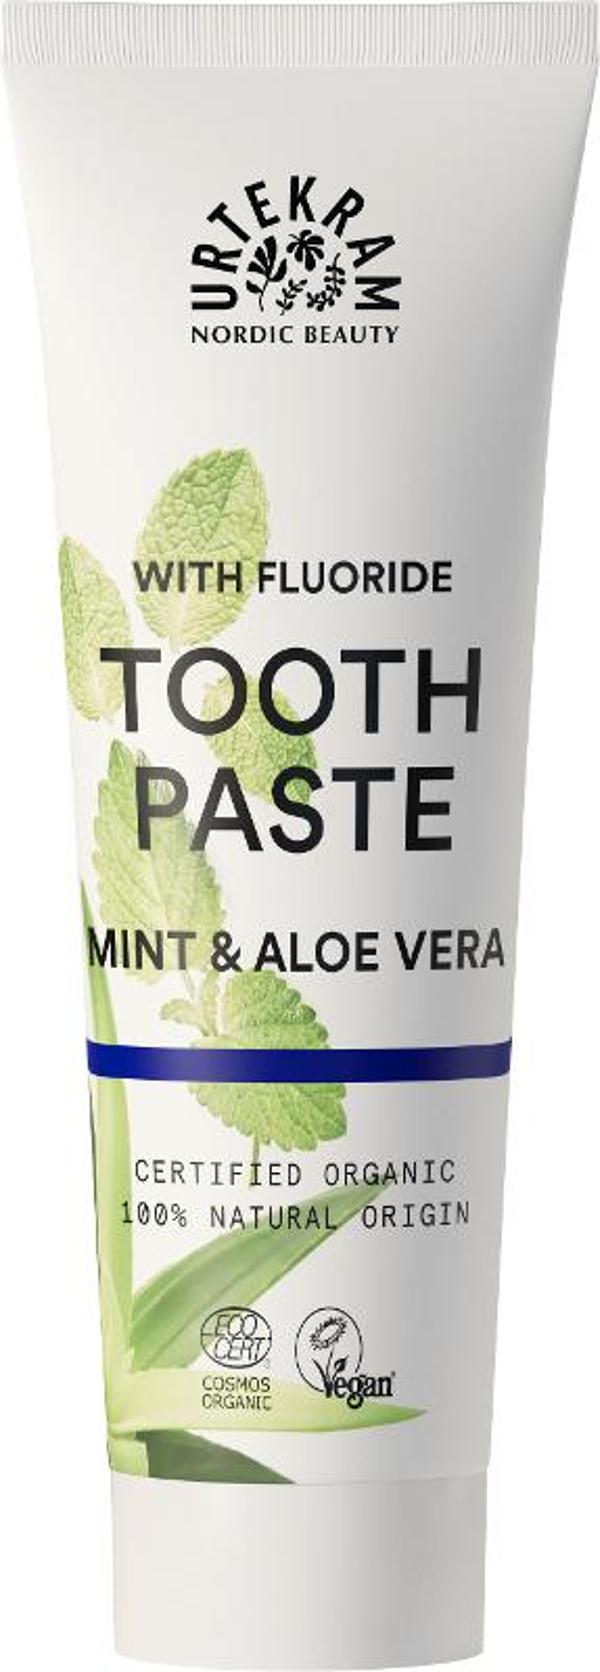 Produktfoto zu Mint-Zahnpasta mit Fluorid, 75ml